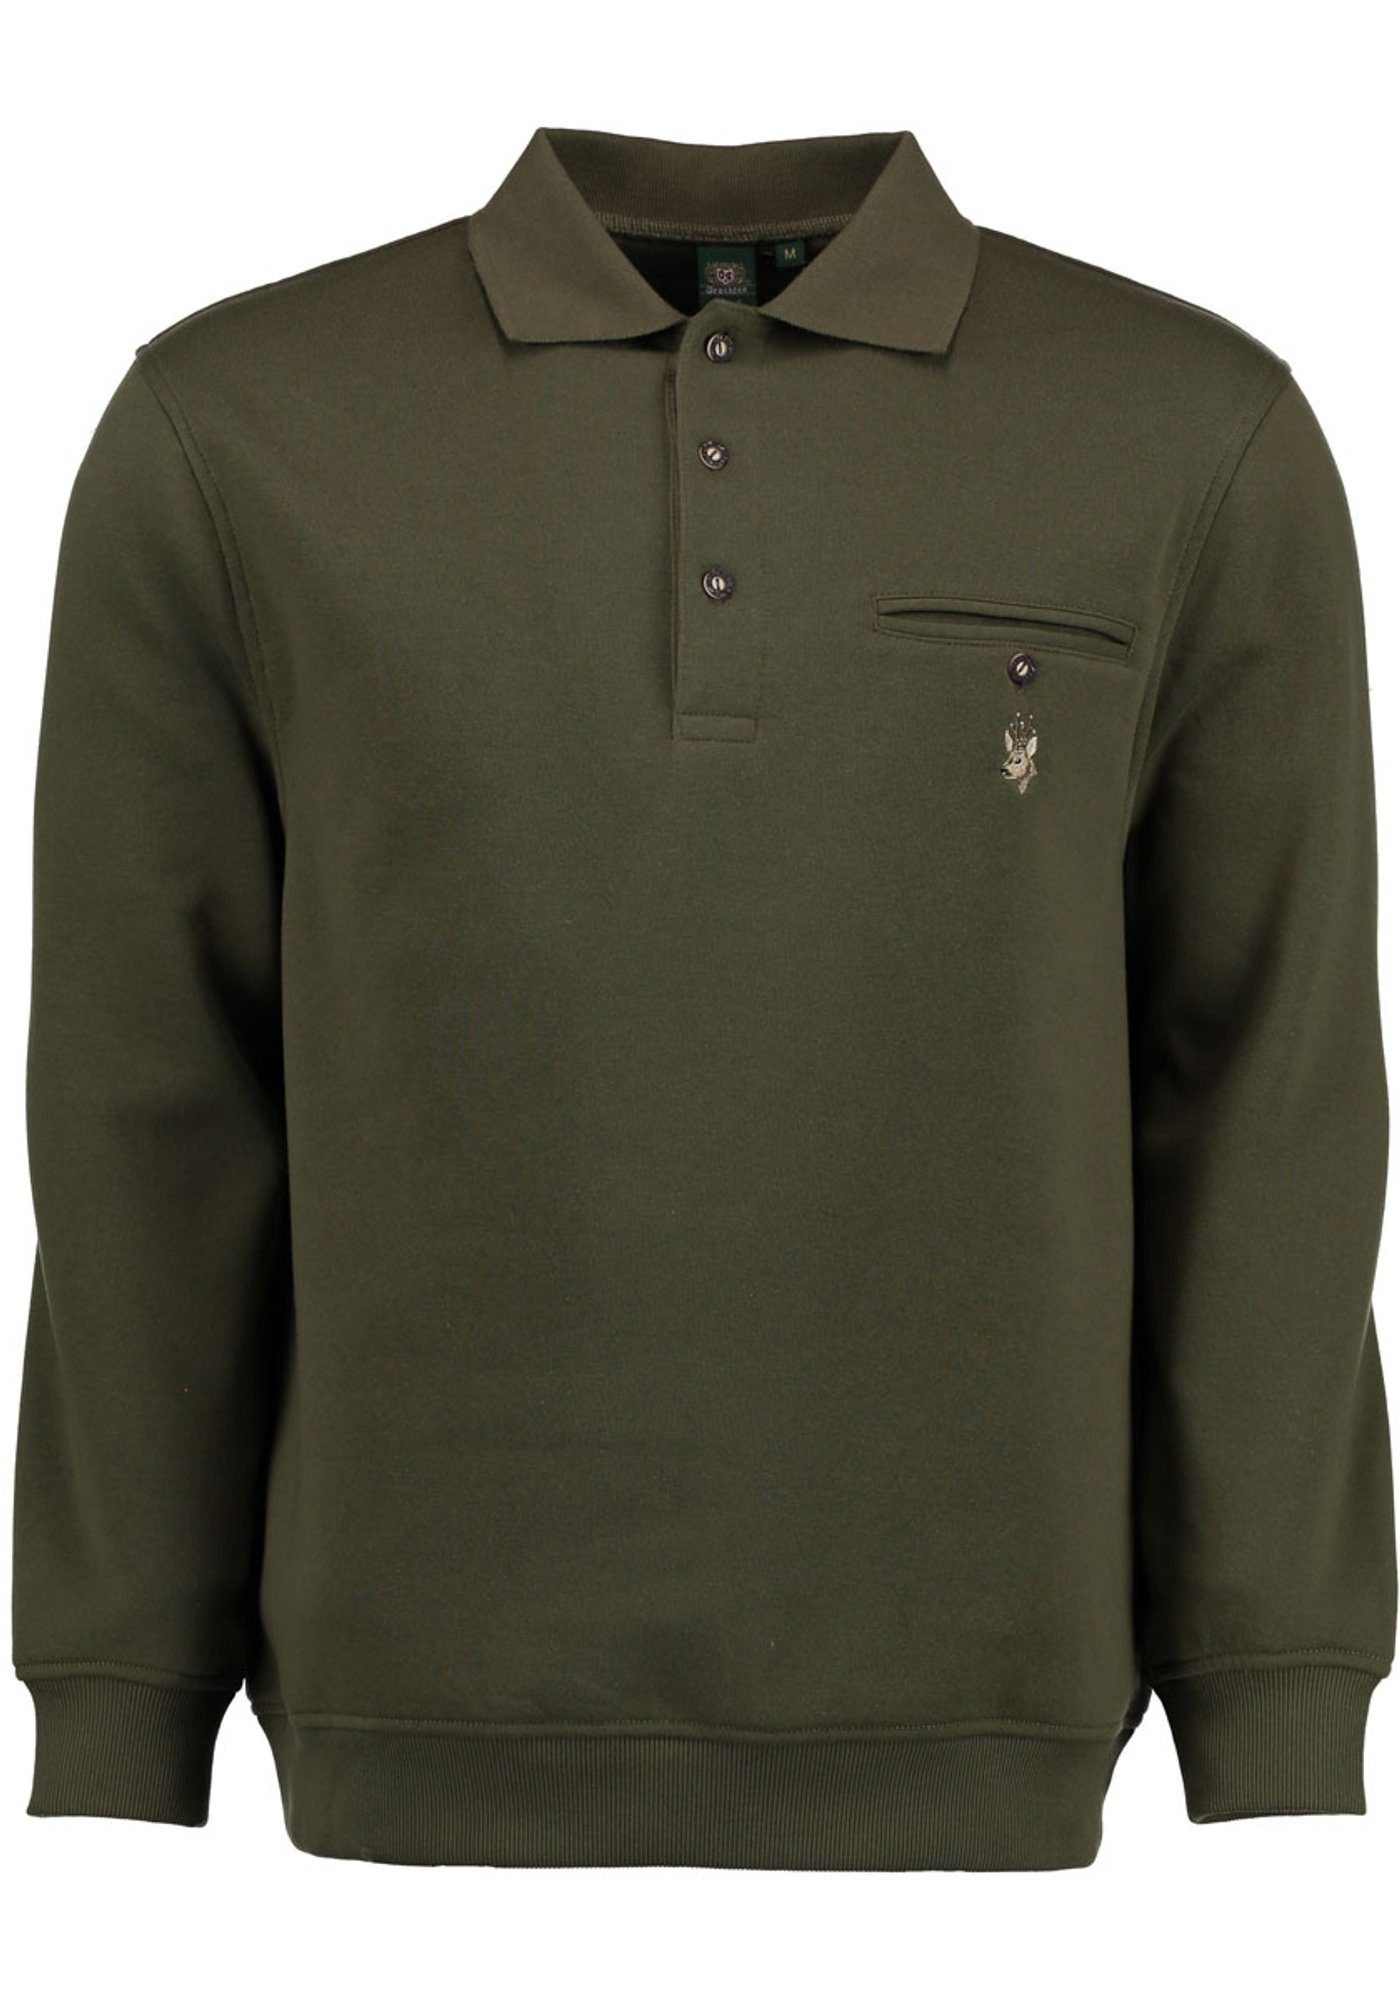 Jagdsweatshirt und OS-Trachten Brusttasche Kragen Rehkopf-Stickerei Rizapa mit Sweatshirt auf